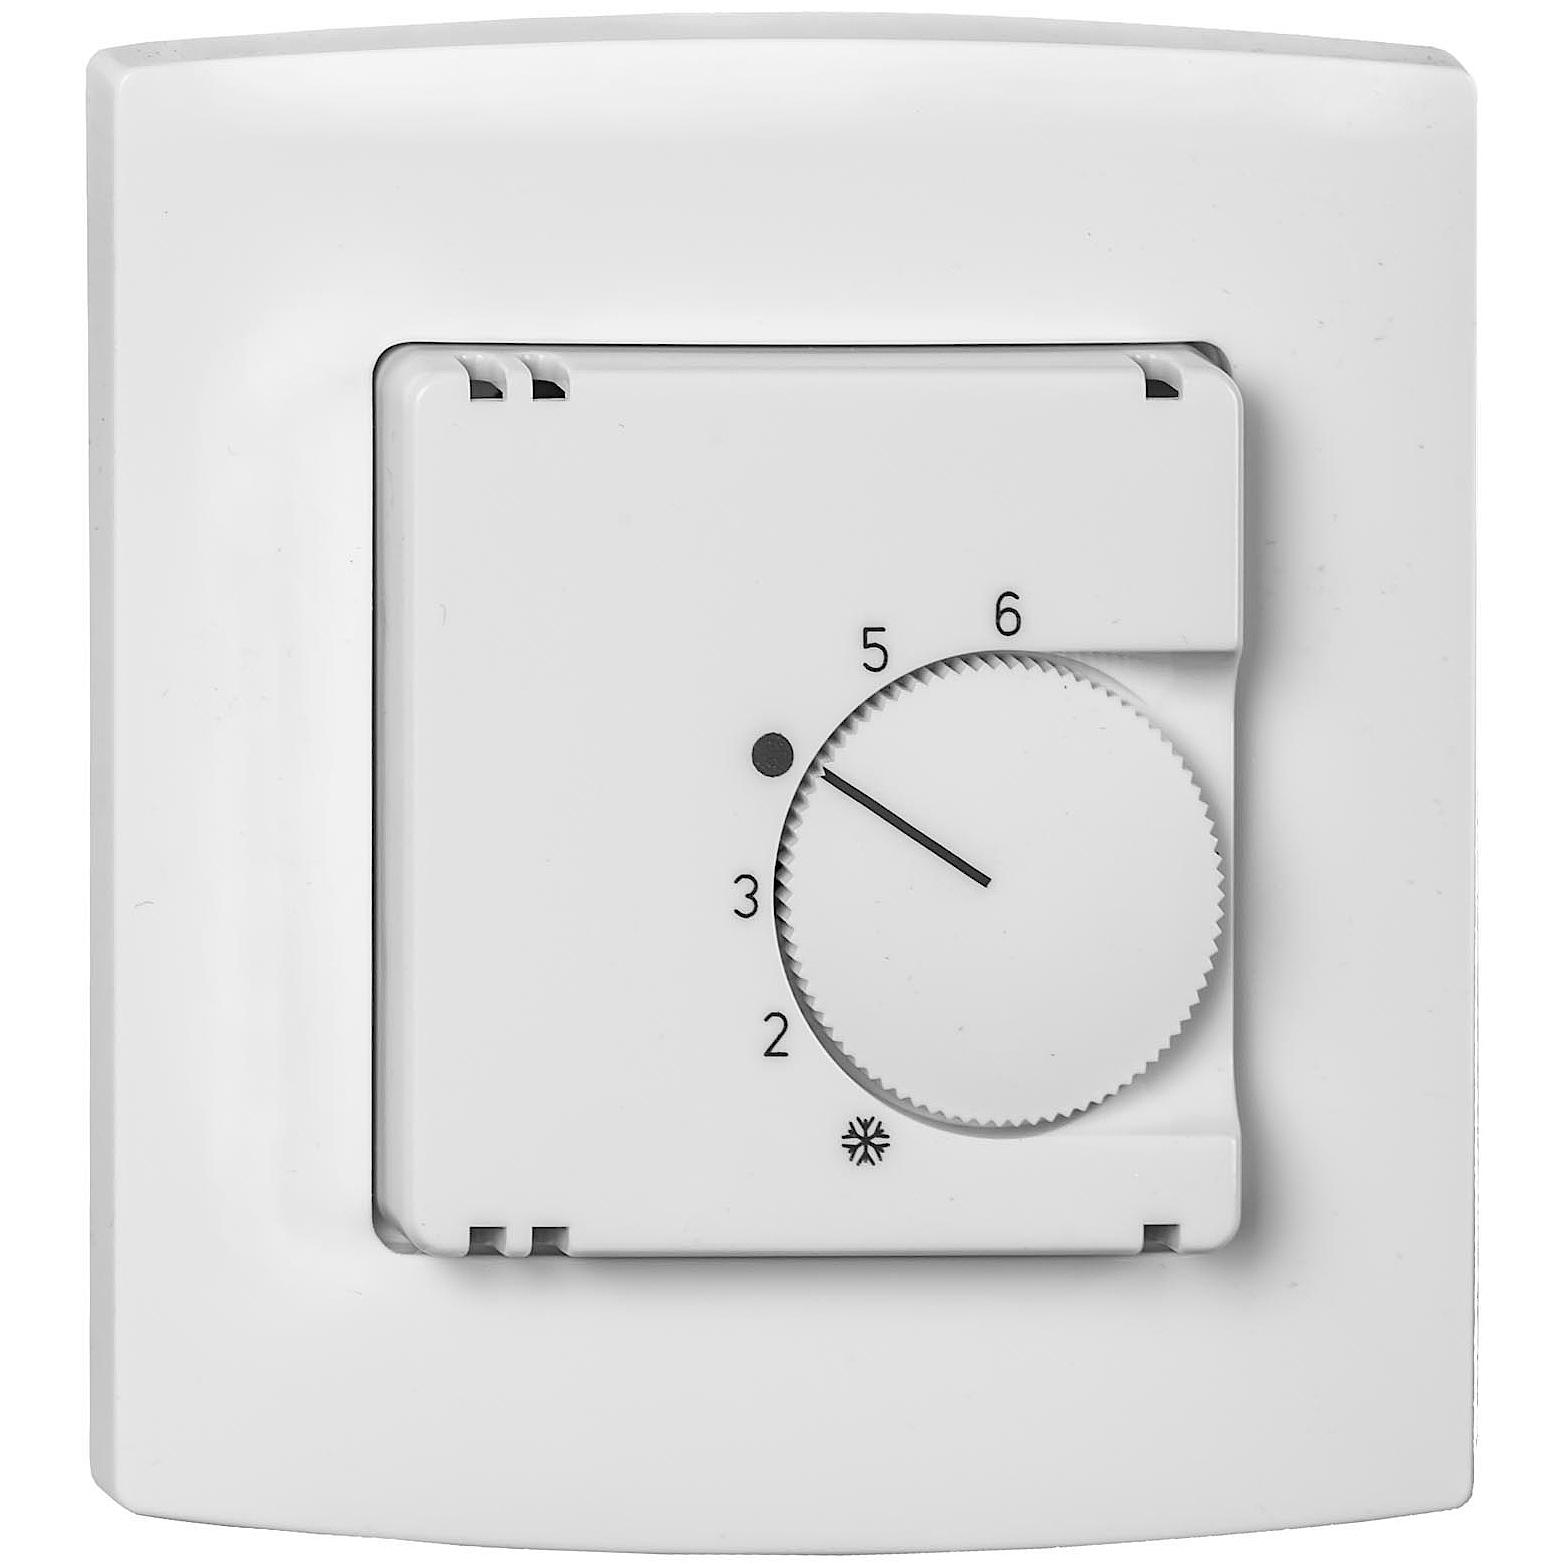 Система регулирования x-net Standard – утопленный в стену термостат 230 В.